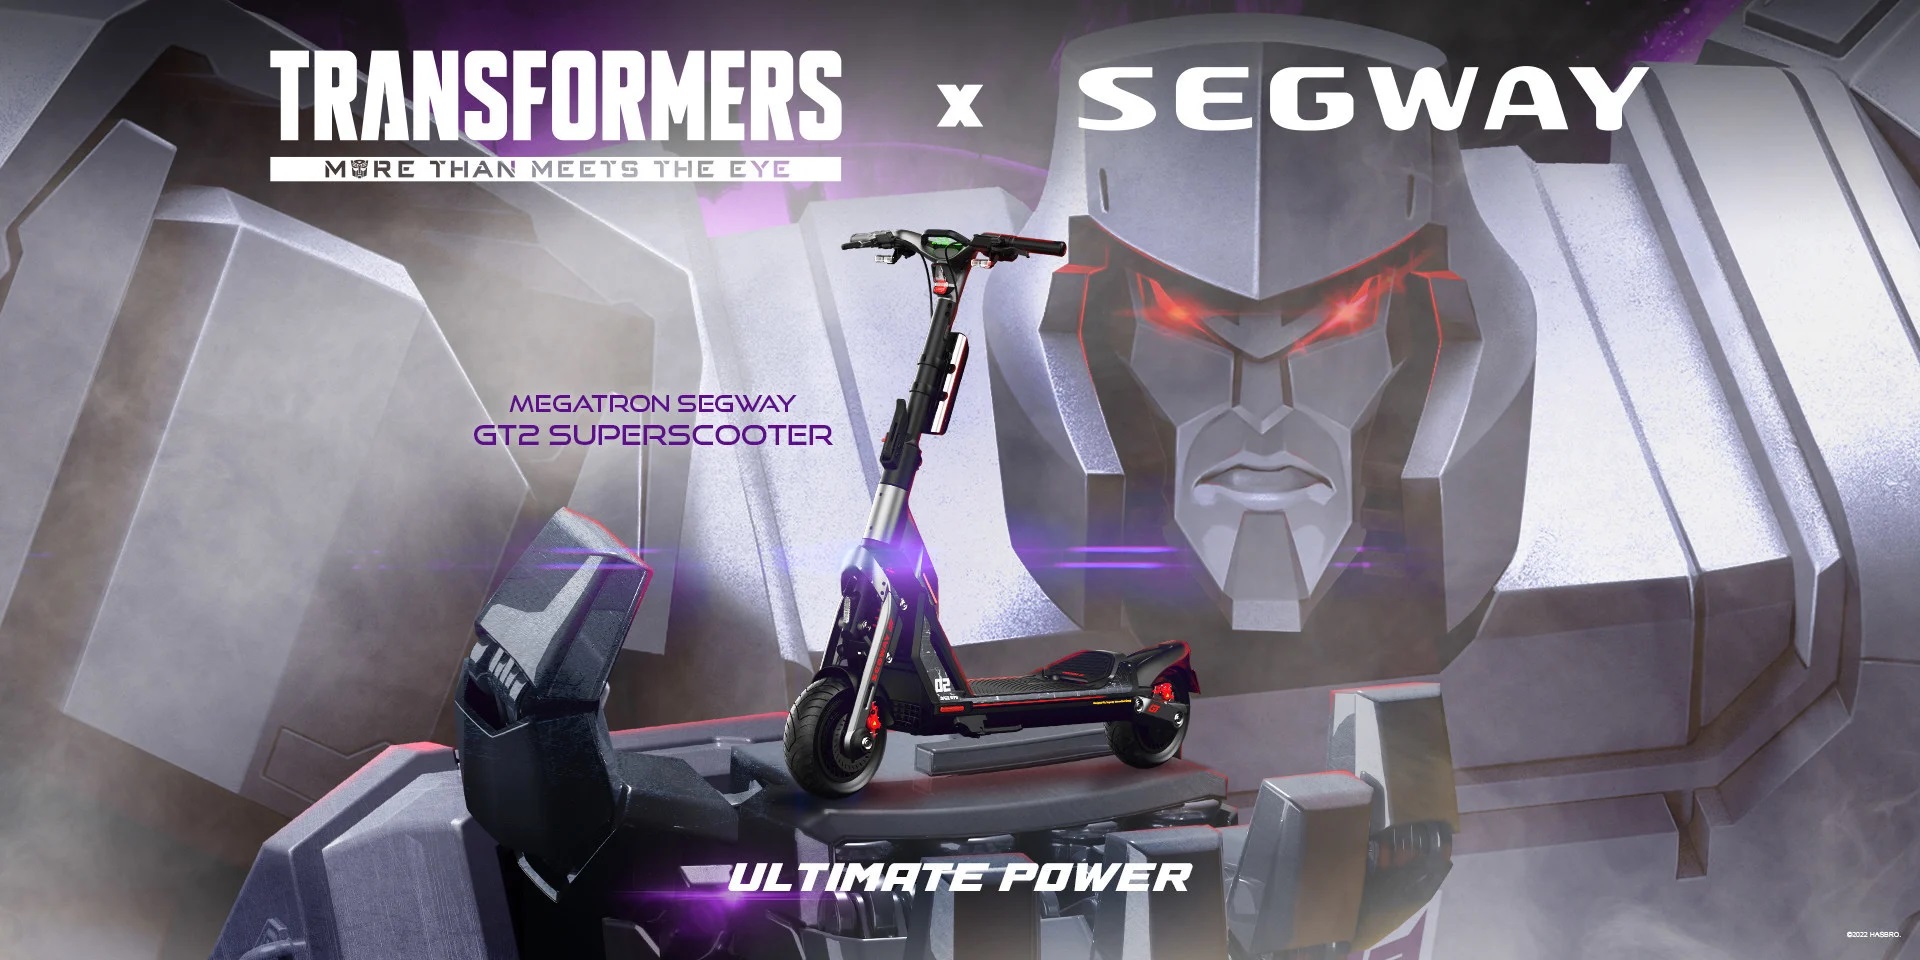 Segway-Ninebot et Hasbro ont lancé une édition limitée de gokarts et e-scooters Transformers. 